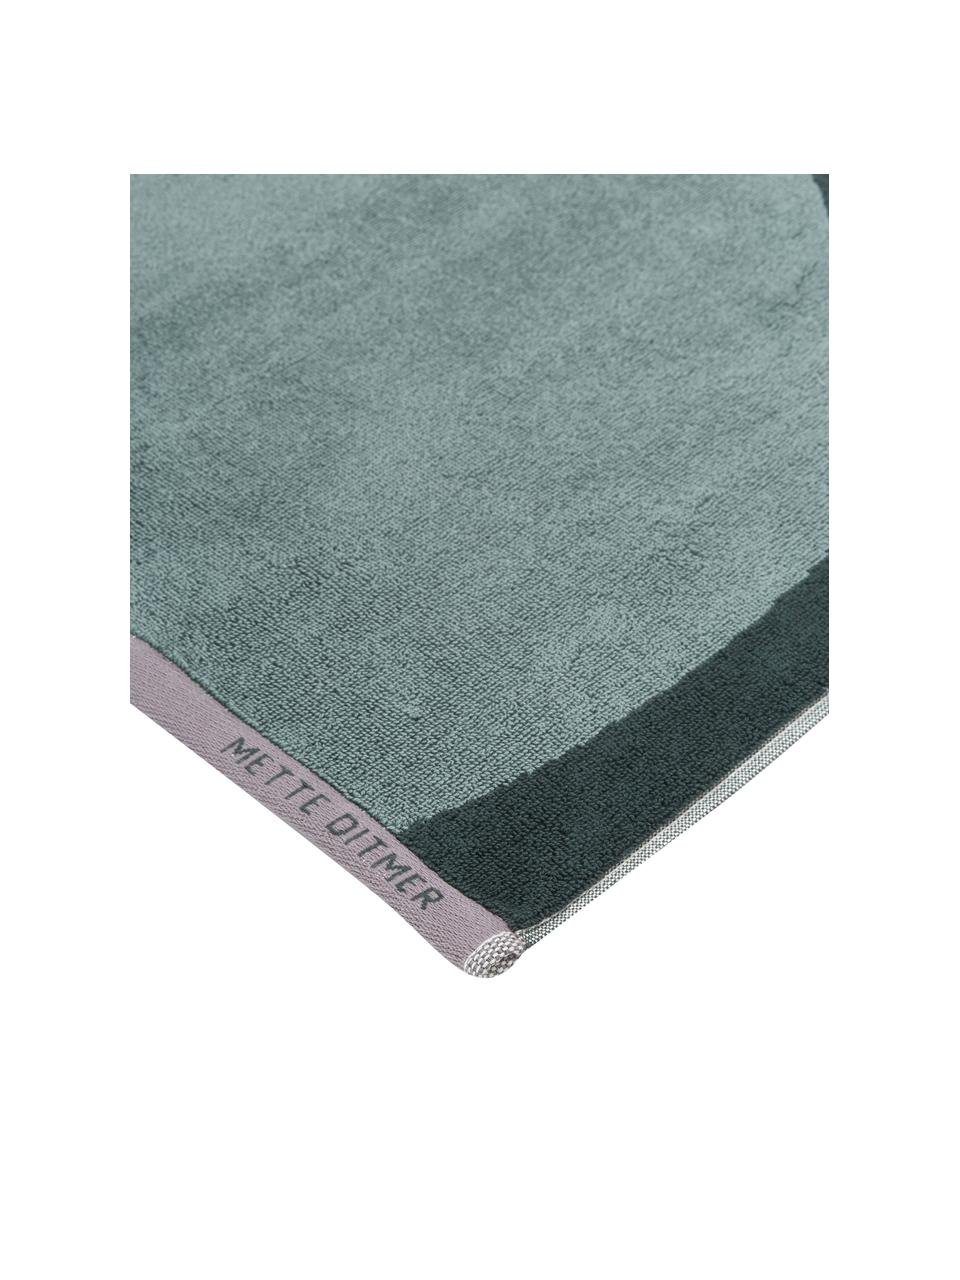 Handdoek Rock in verschillende formaten van biokatoen, 100% biokatoen, Groen, donkergroen, Handdoek, B 50 x L 95 cm, 2 stuks